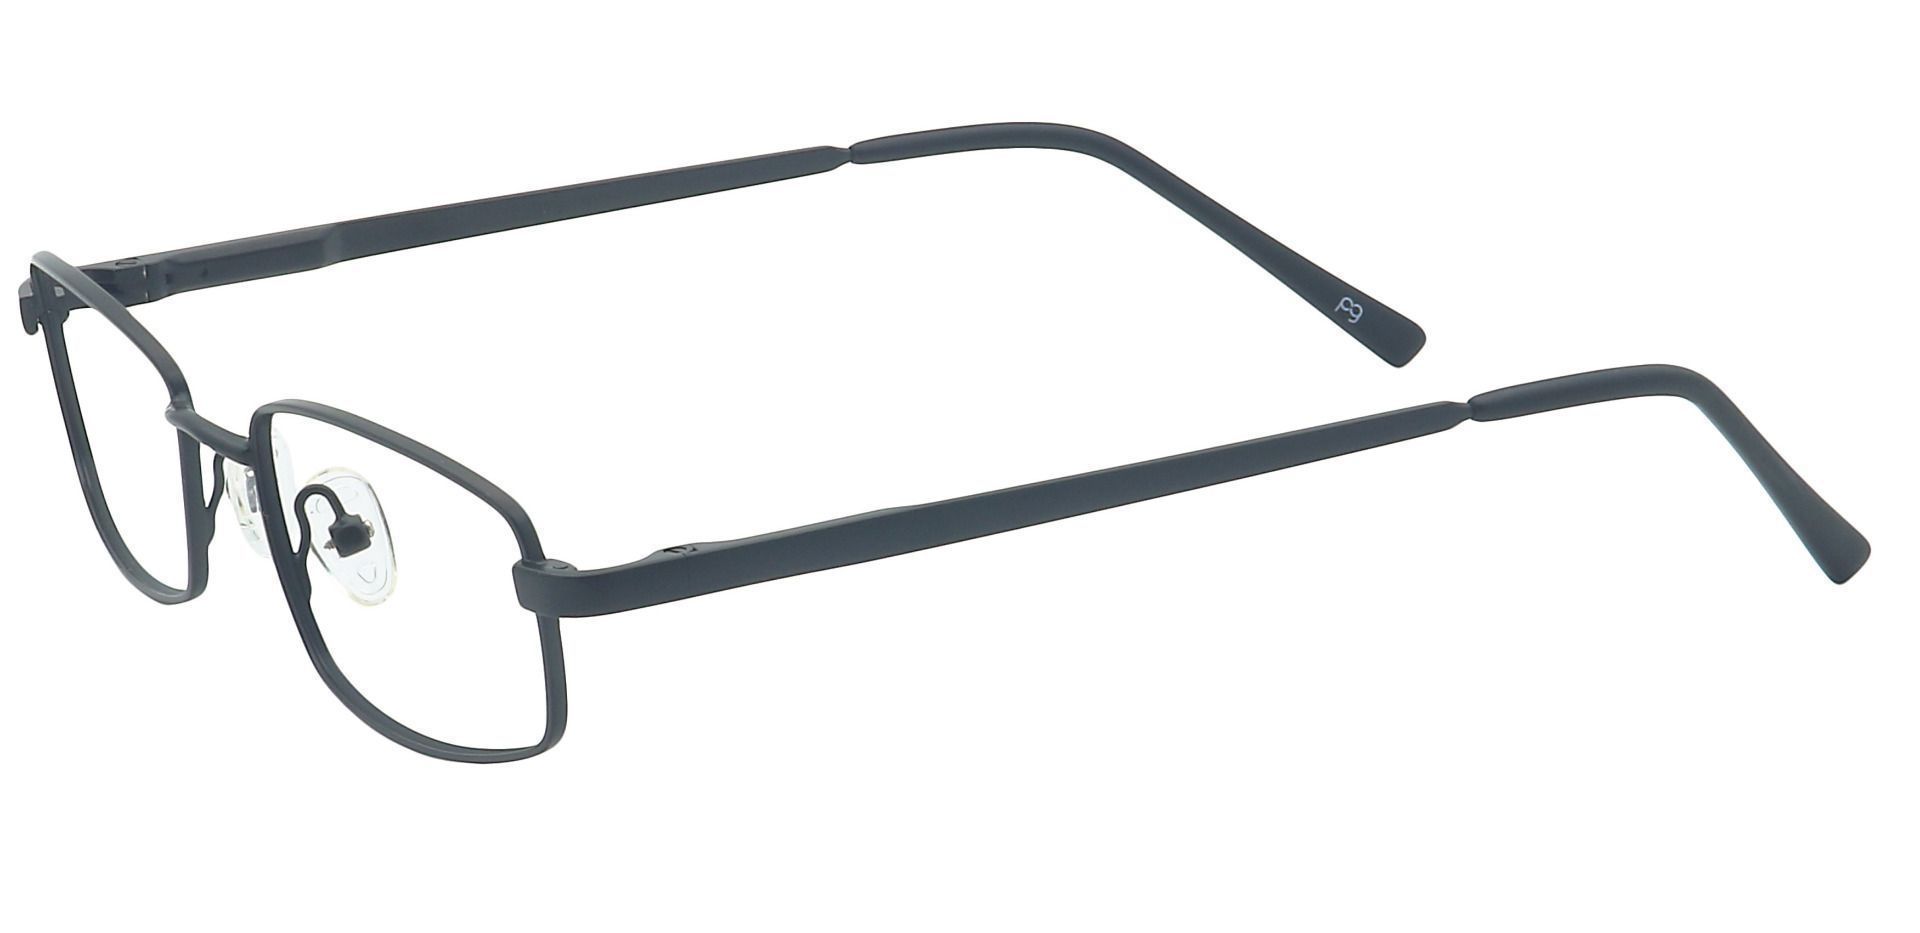 Sheldon Square Eyeglasses Frame - Black